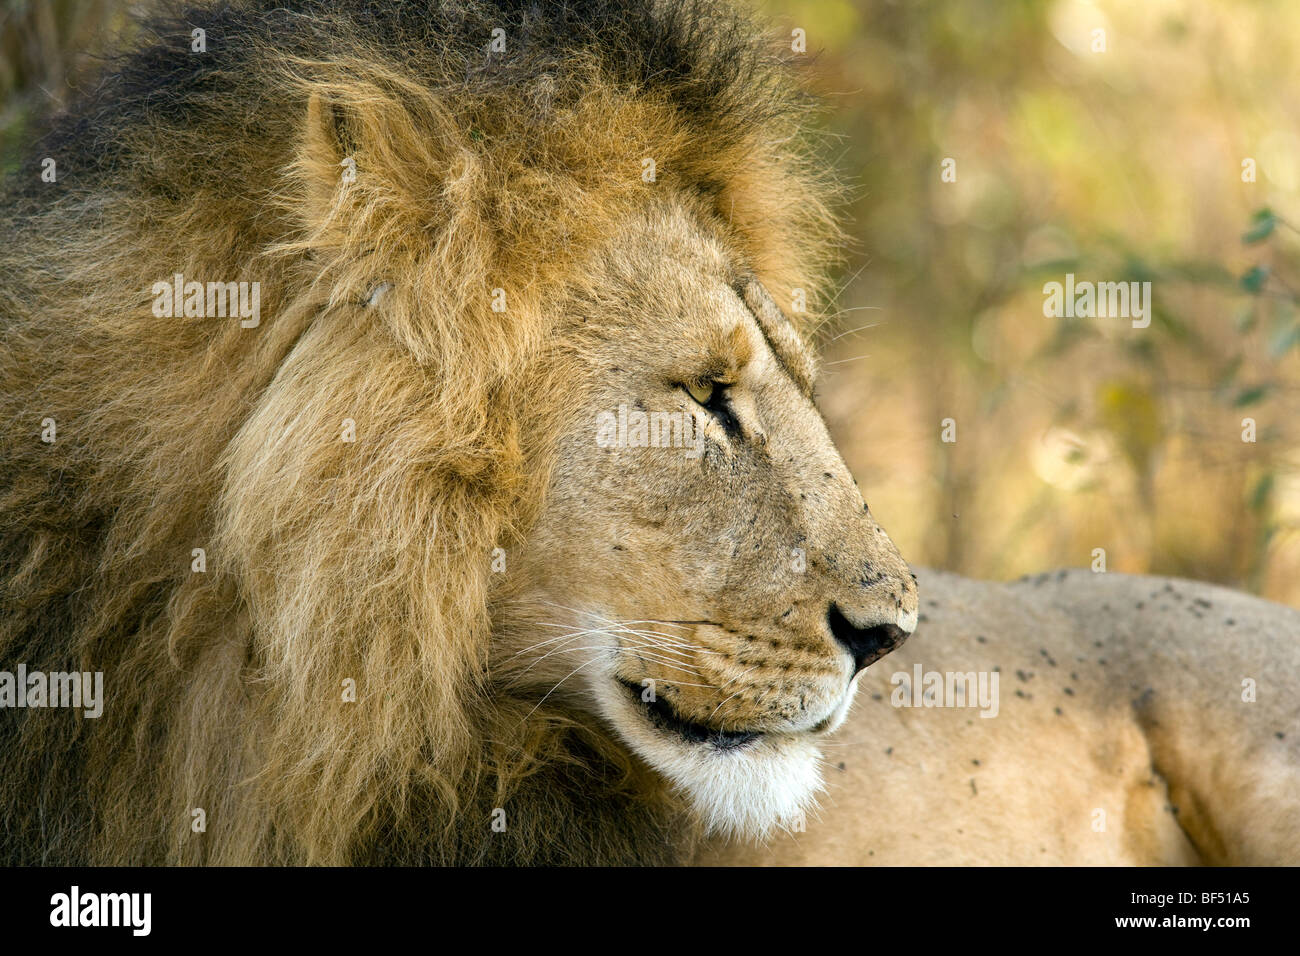 Profil de lion mâle - Masai Mara National Reserve, Kenya Banque D'Images